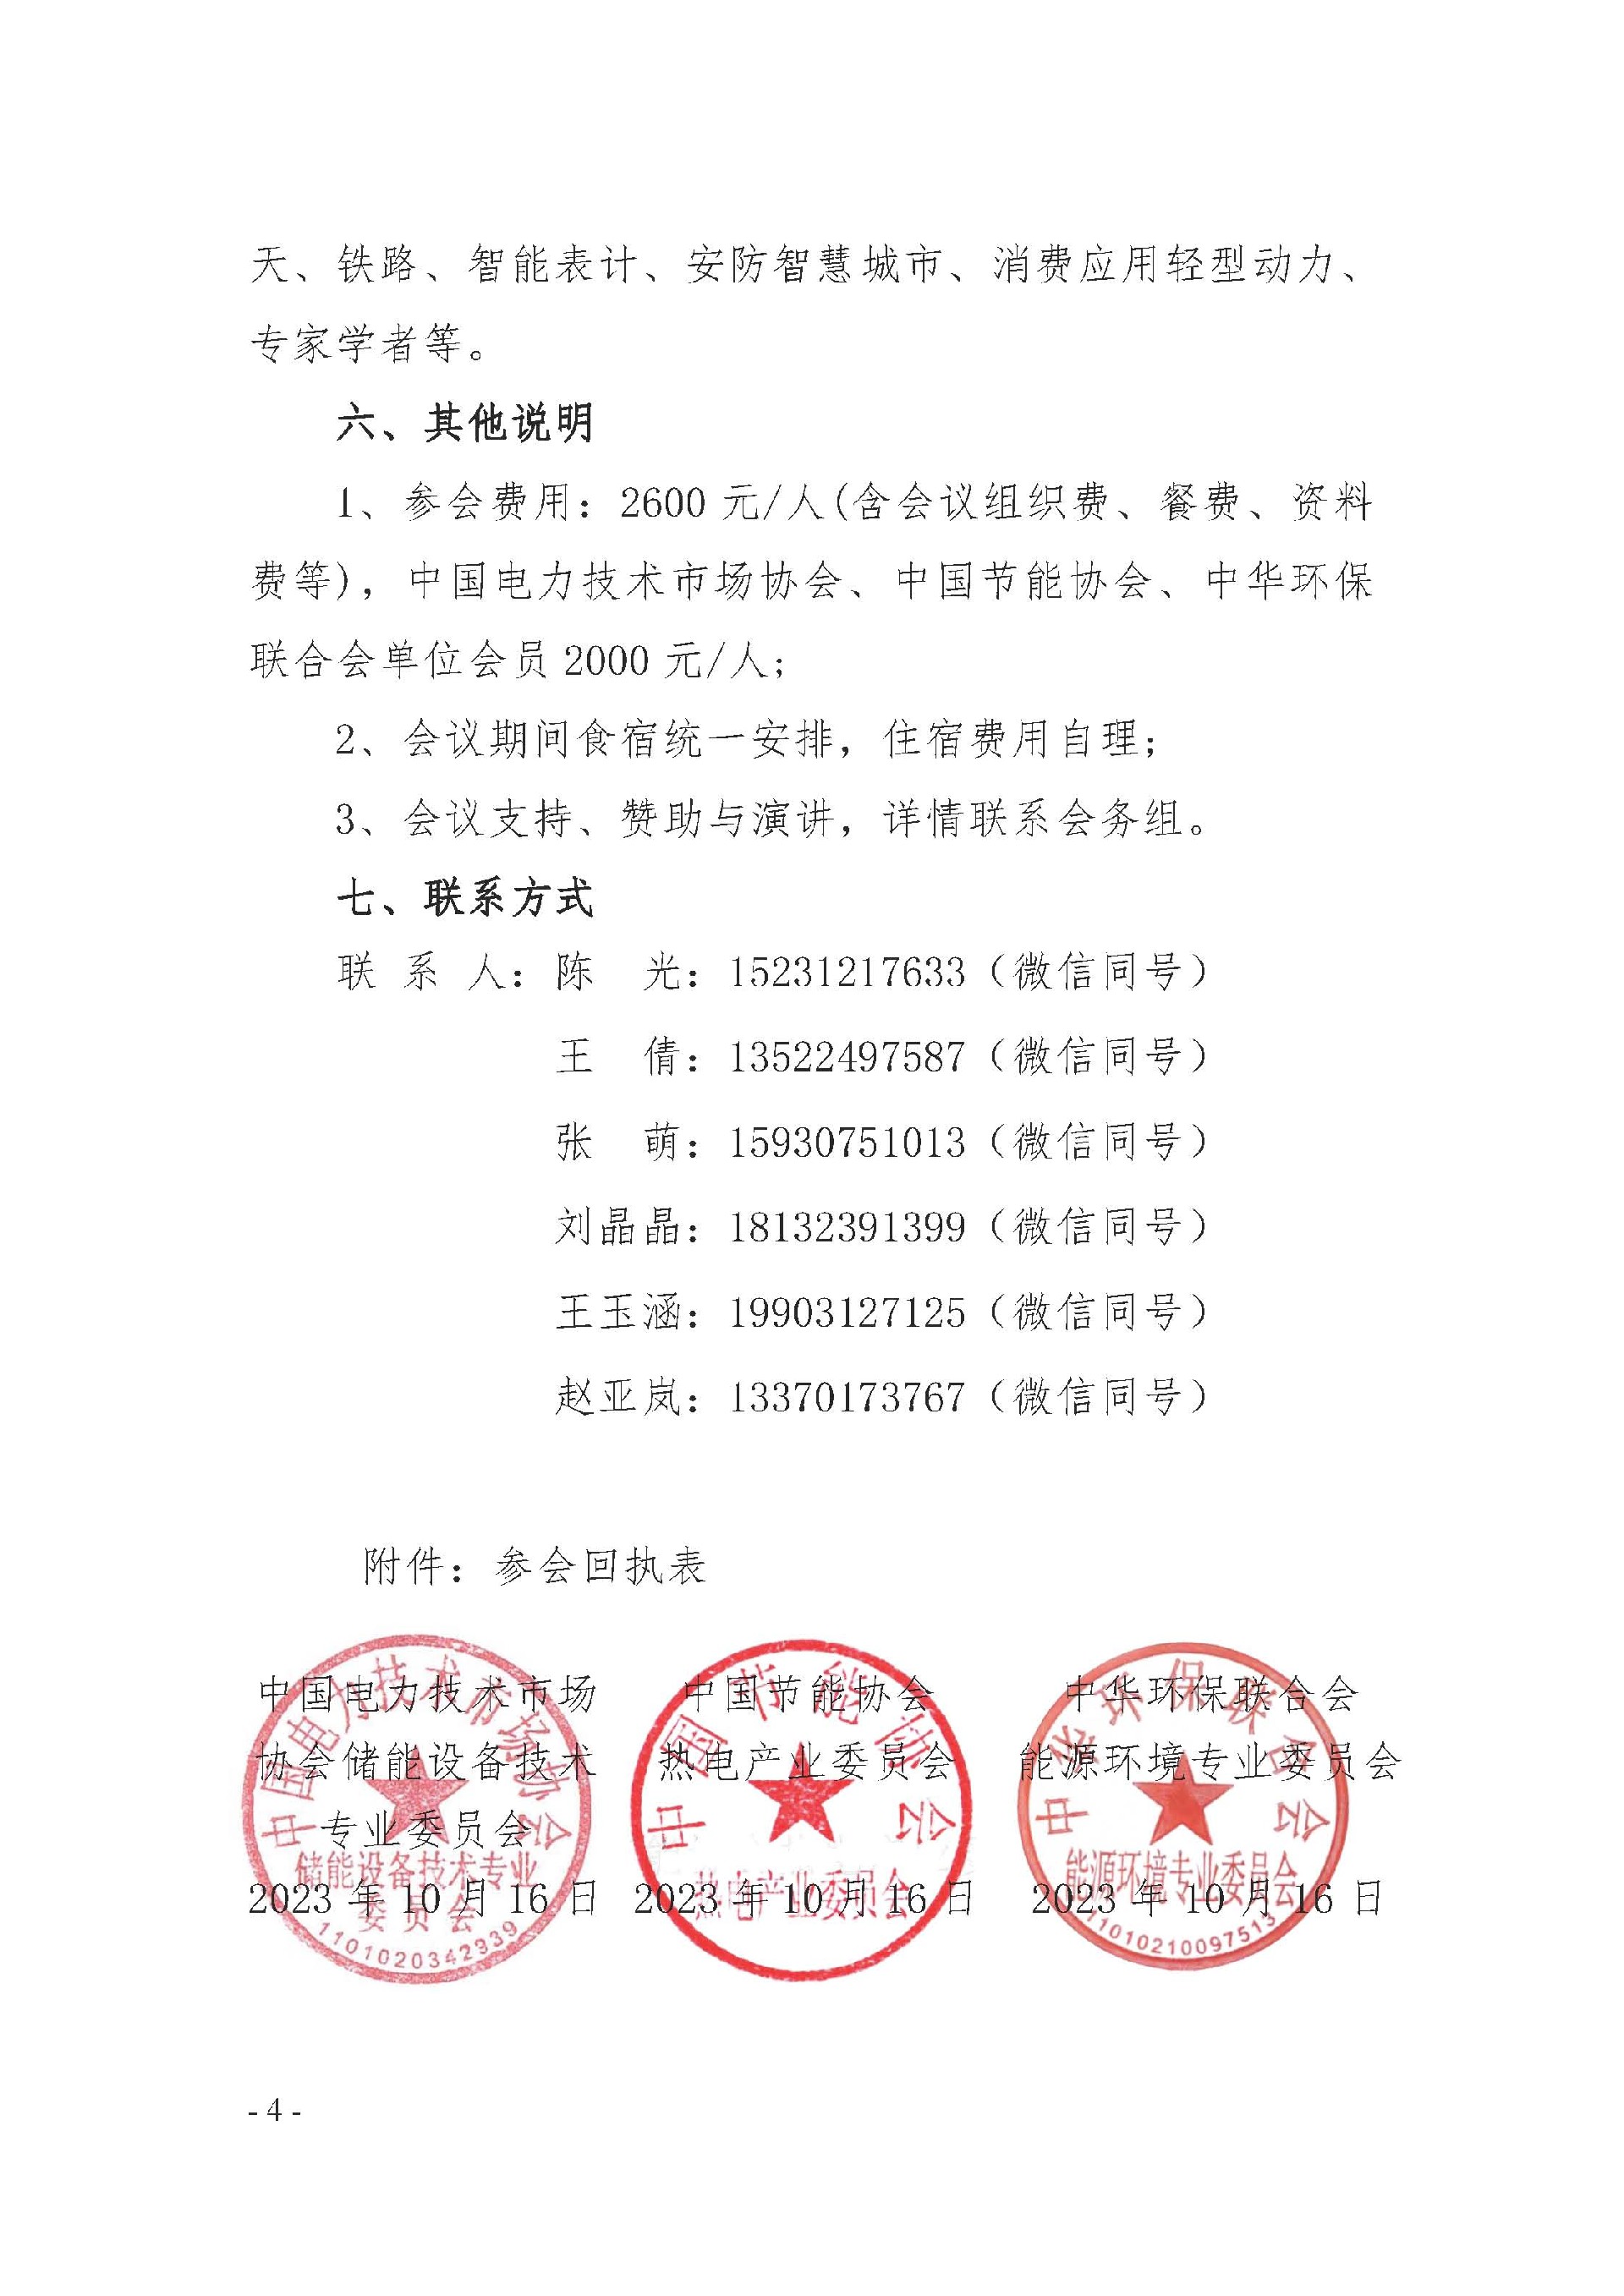 (大会)关于举办“中国长江经济带数字能源与储能技术大会”的通知(1)_页面_4.jpg